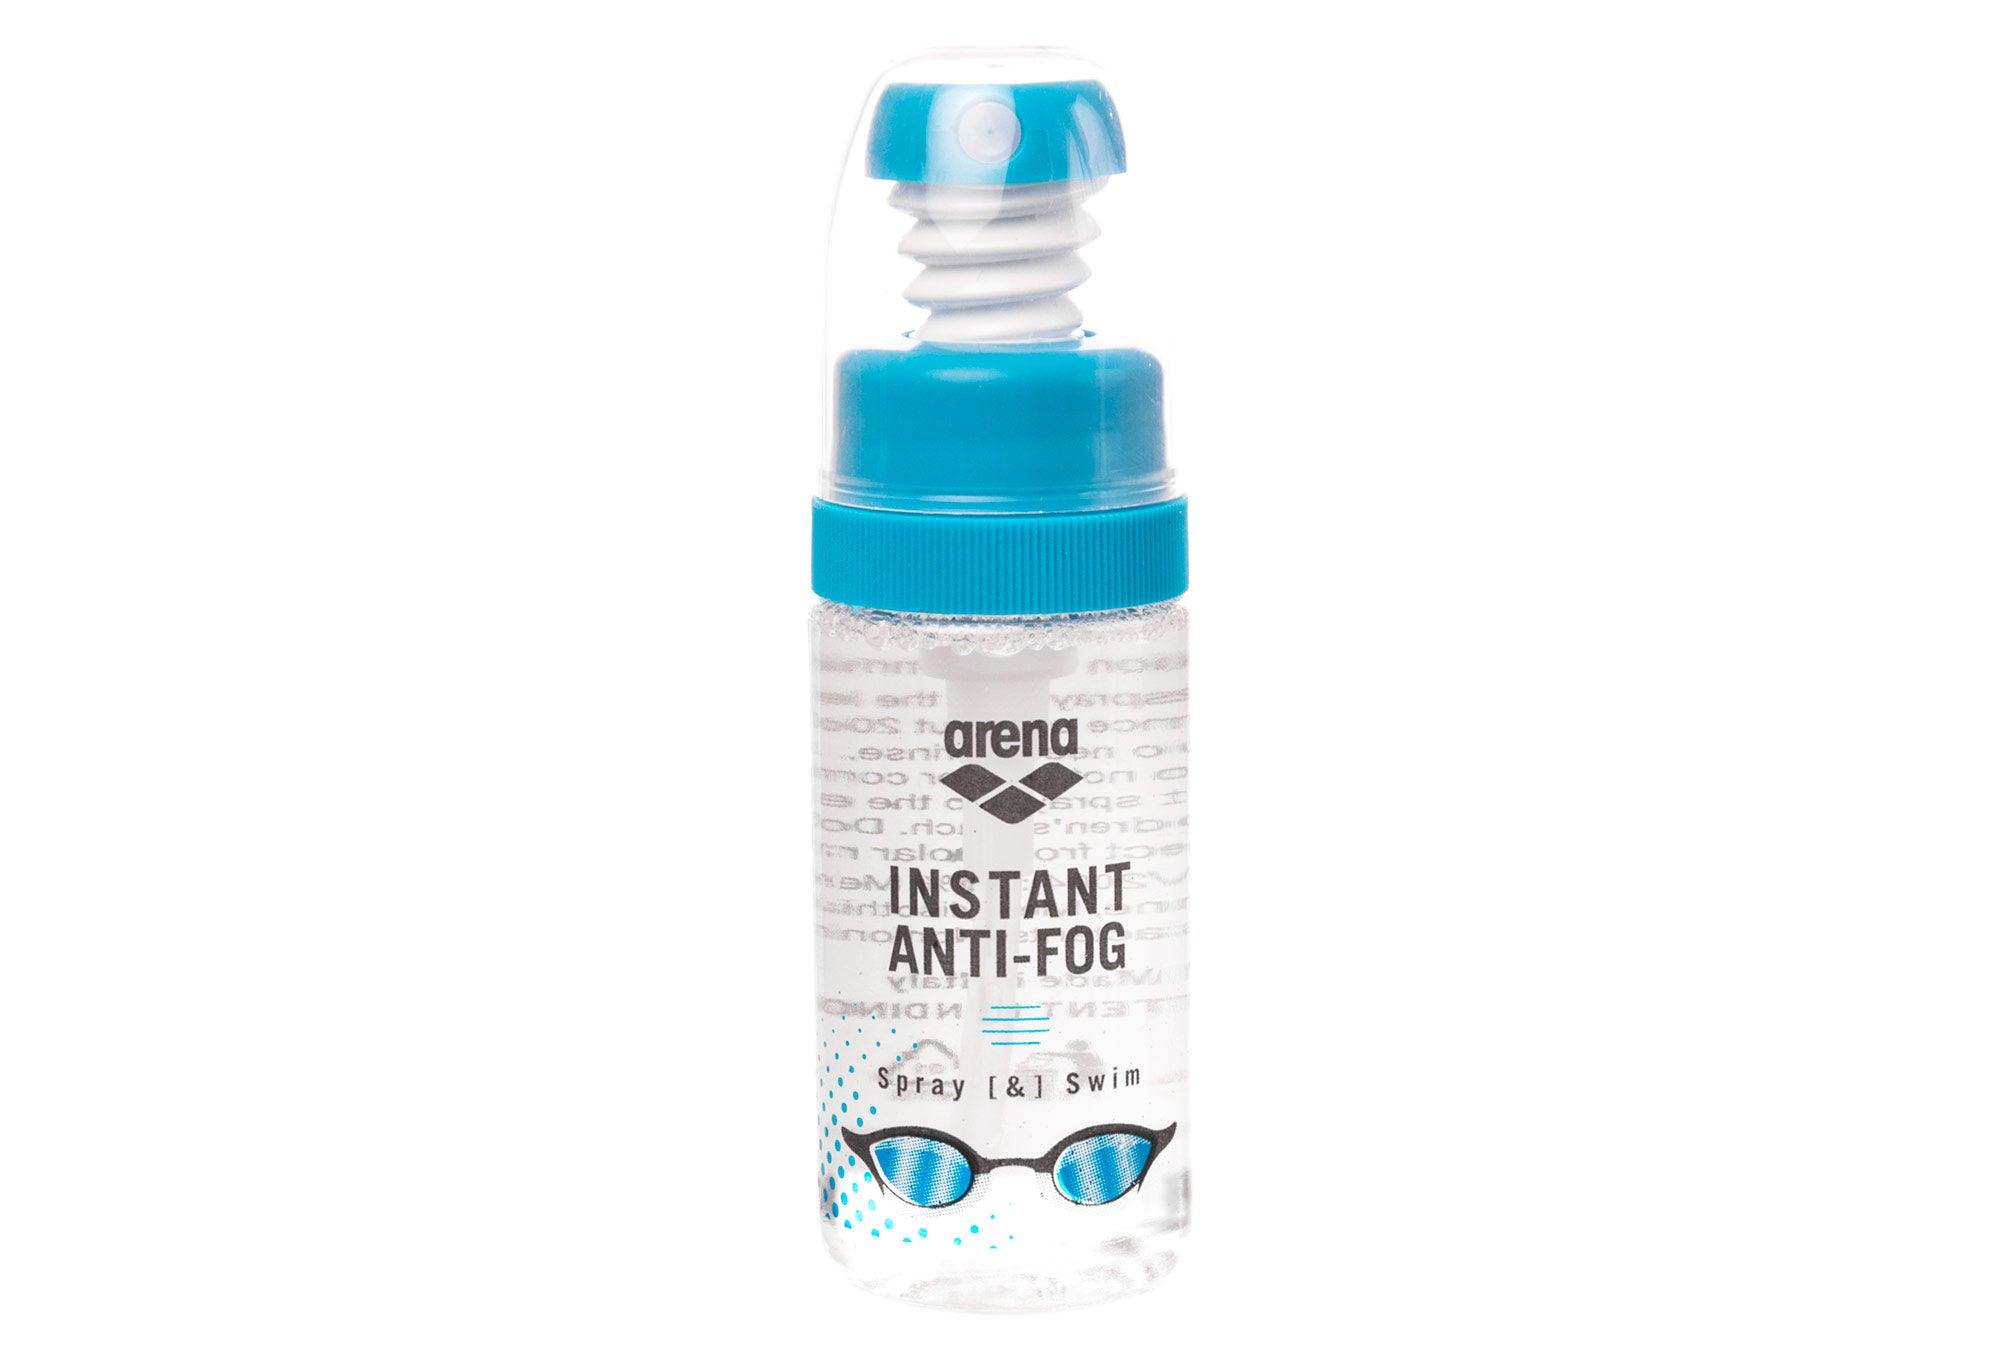 Contacta Antifog Spray Antiappannamento Occhiali 20ml - Top Farmacia